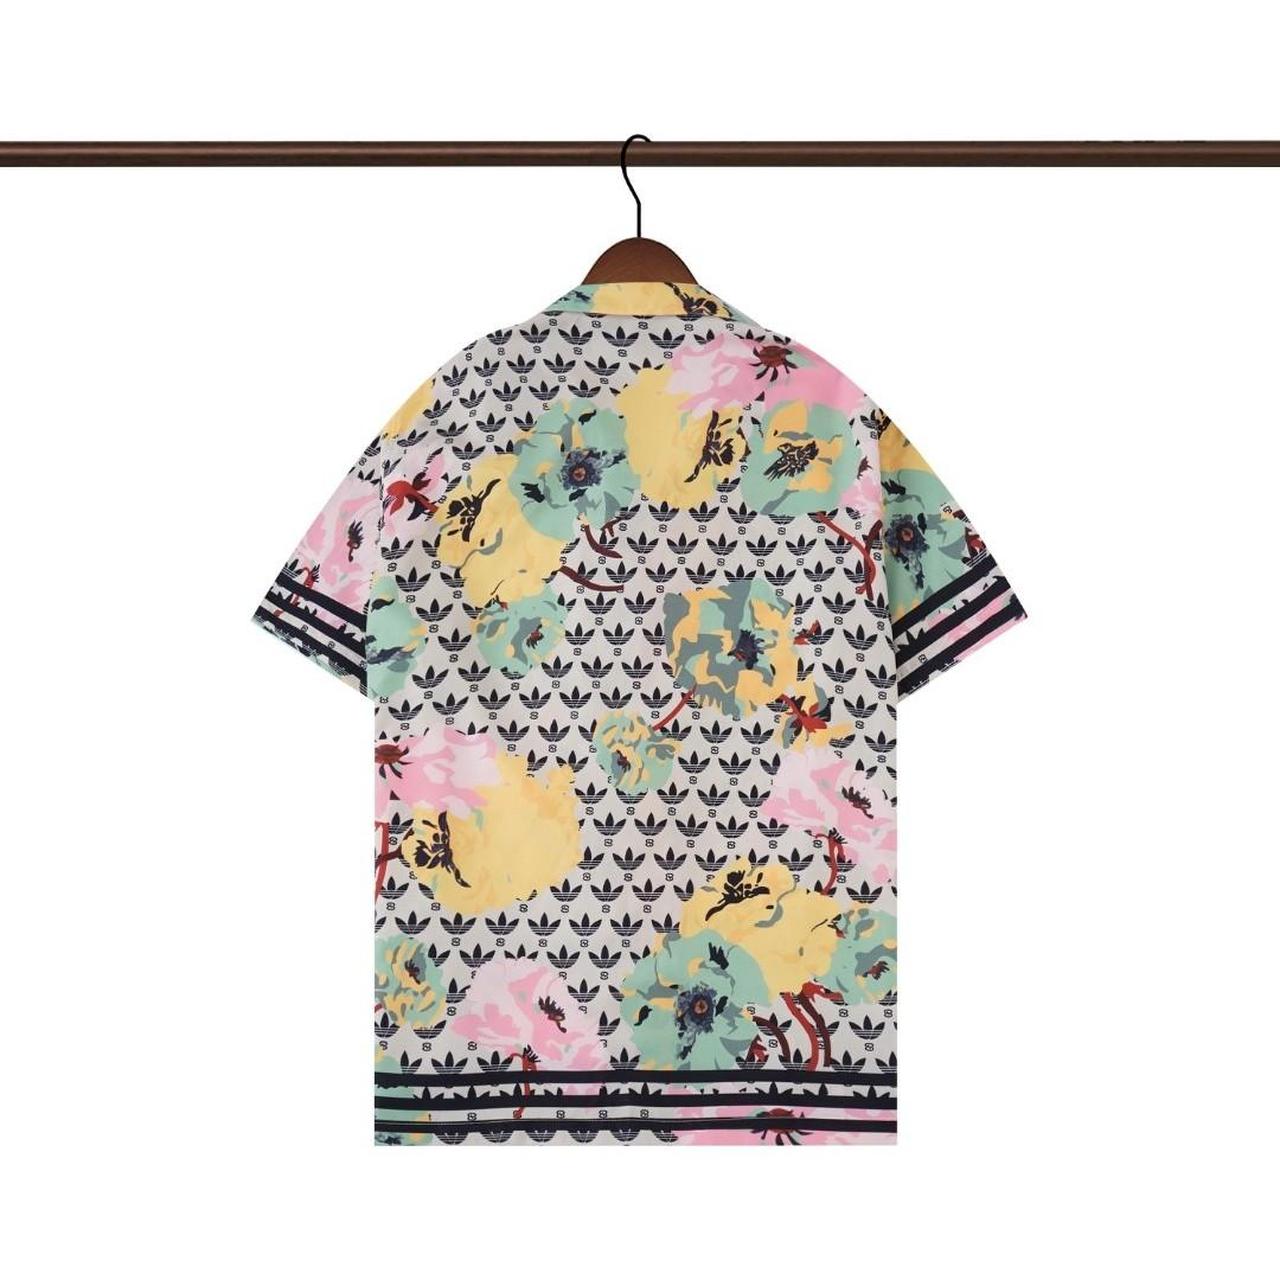 Gucci x Adidas summer ☀️ shirt 🔥 size S - Depop